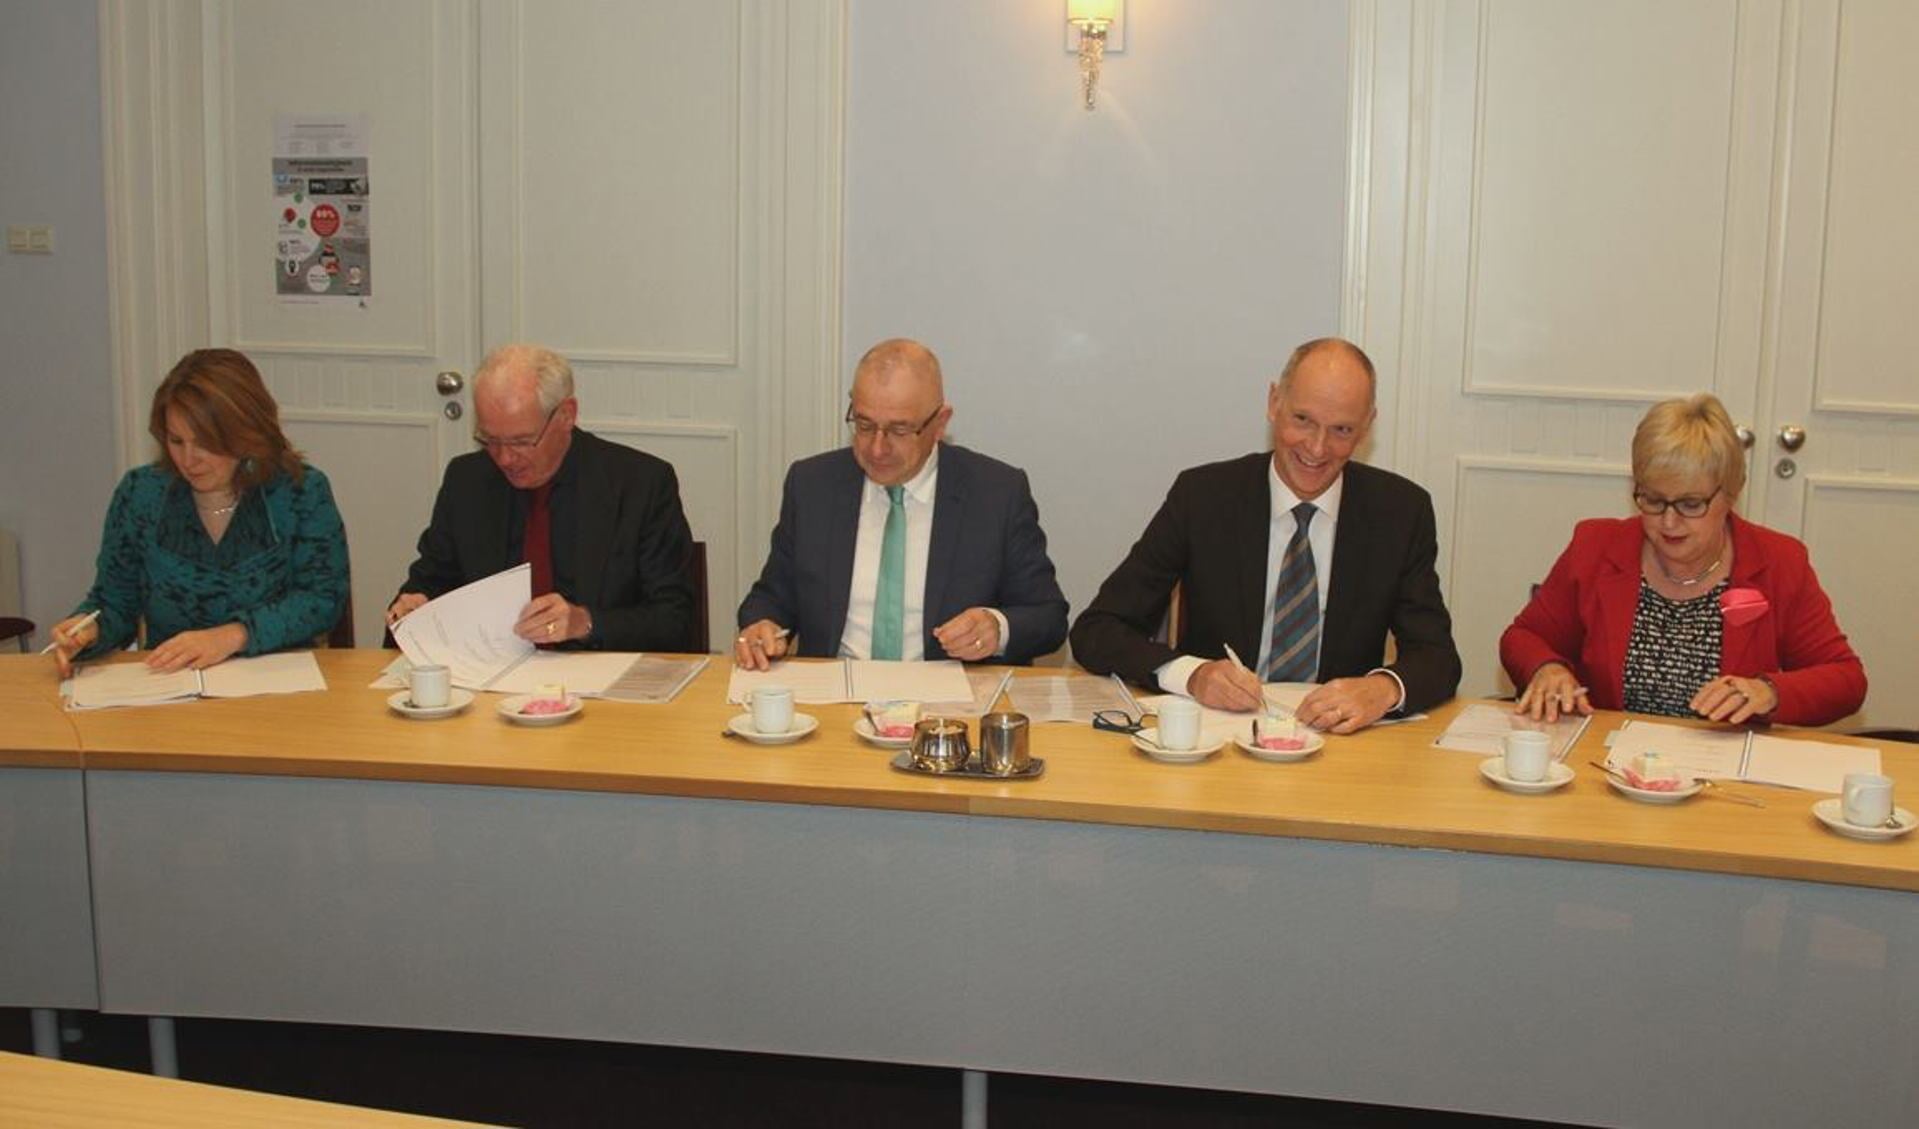 De overeenkomst werd maandagochtend in Schijndel ondertekend.